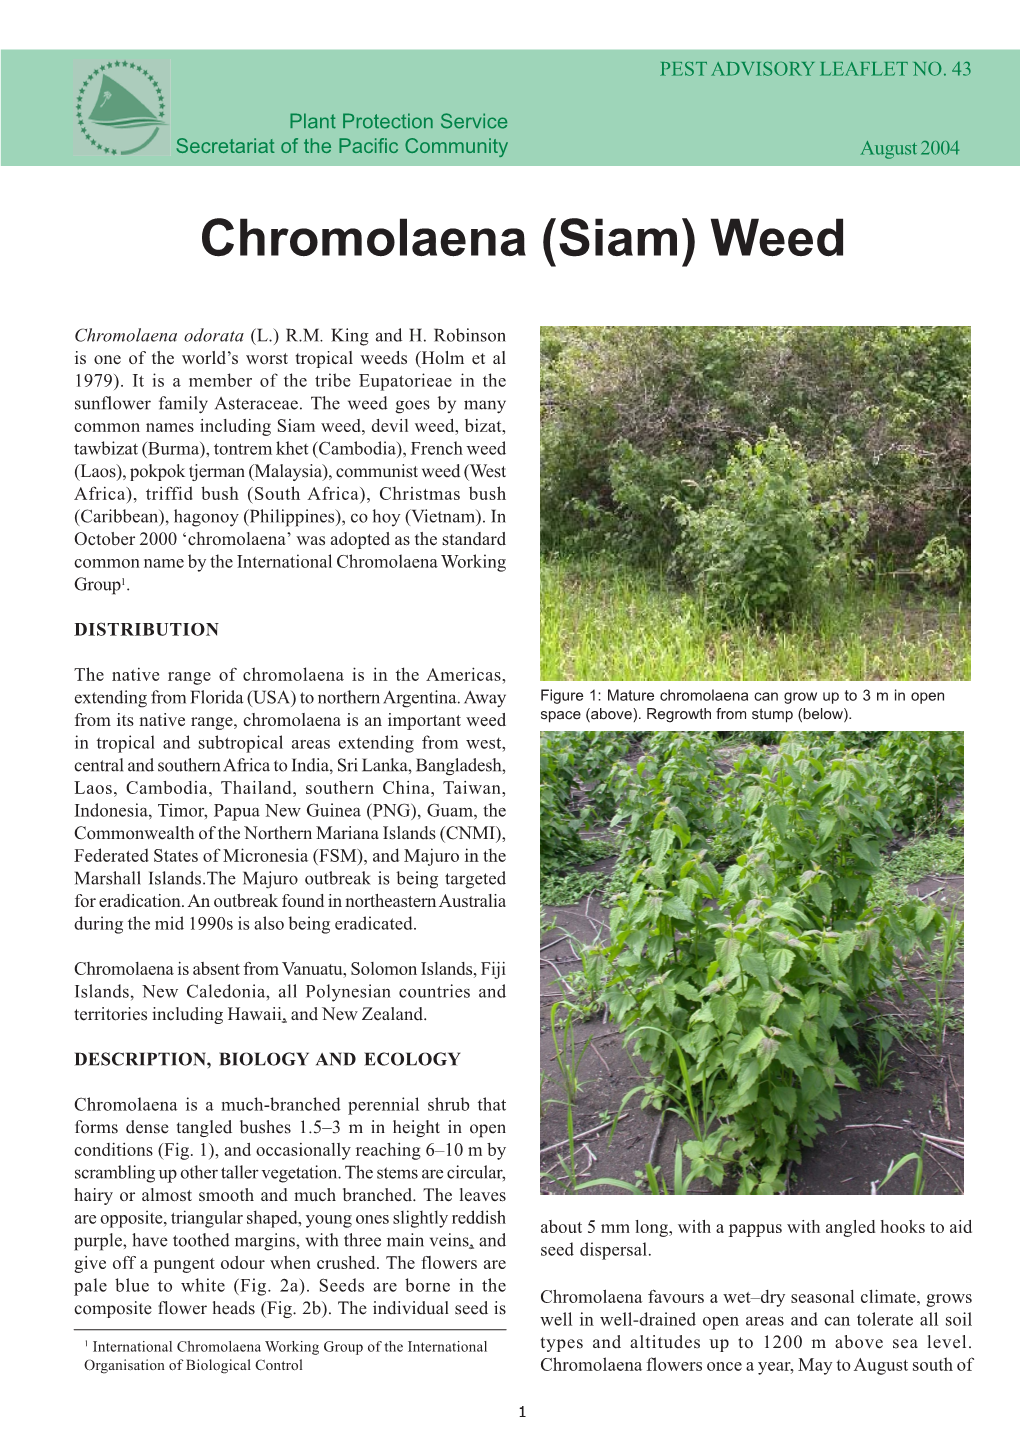 Chromolaena Weed